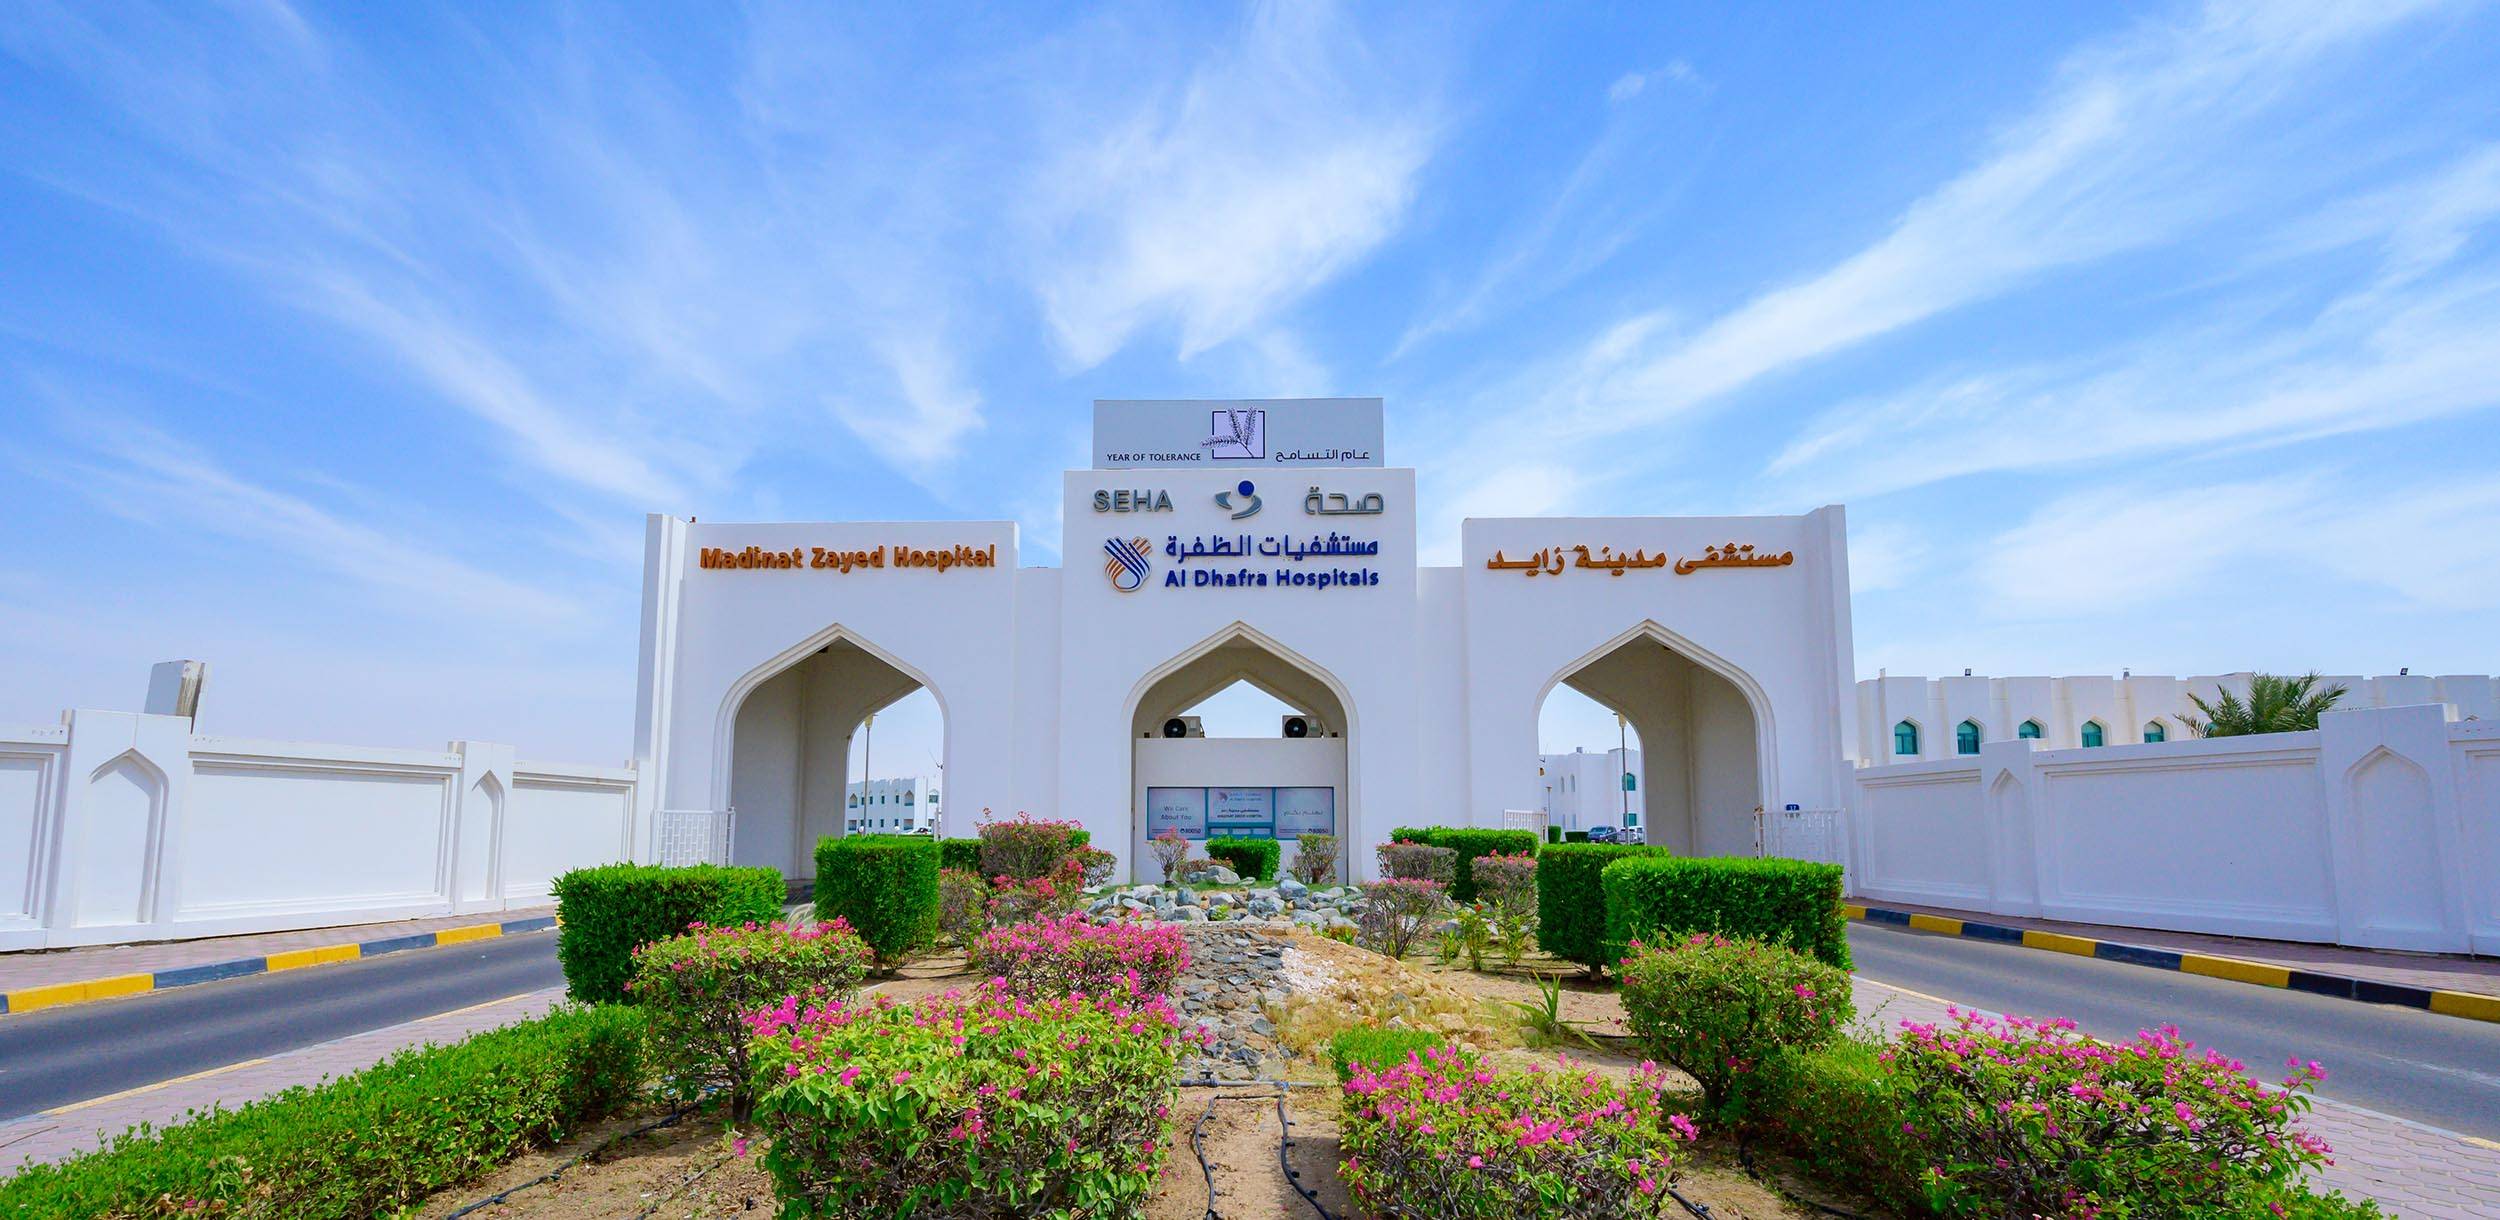 Al Dhafra Hospitals